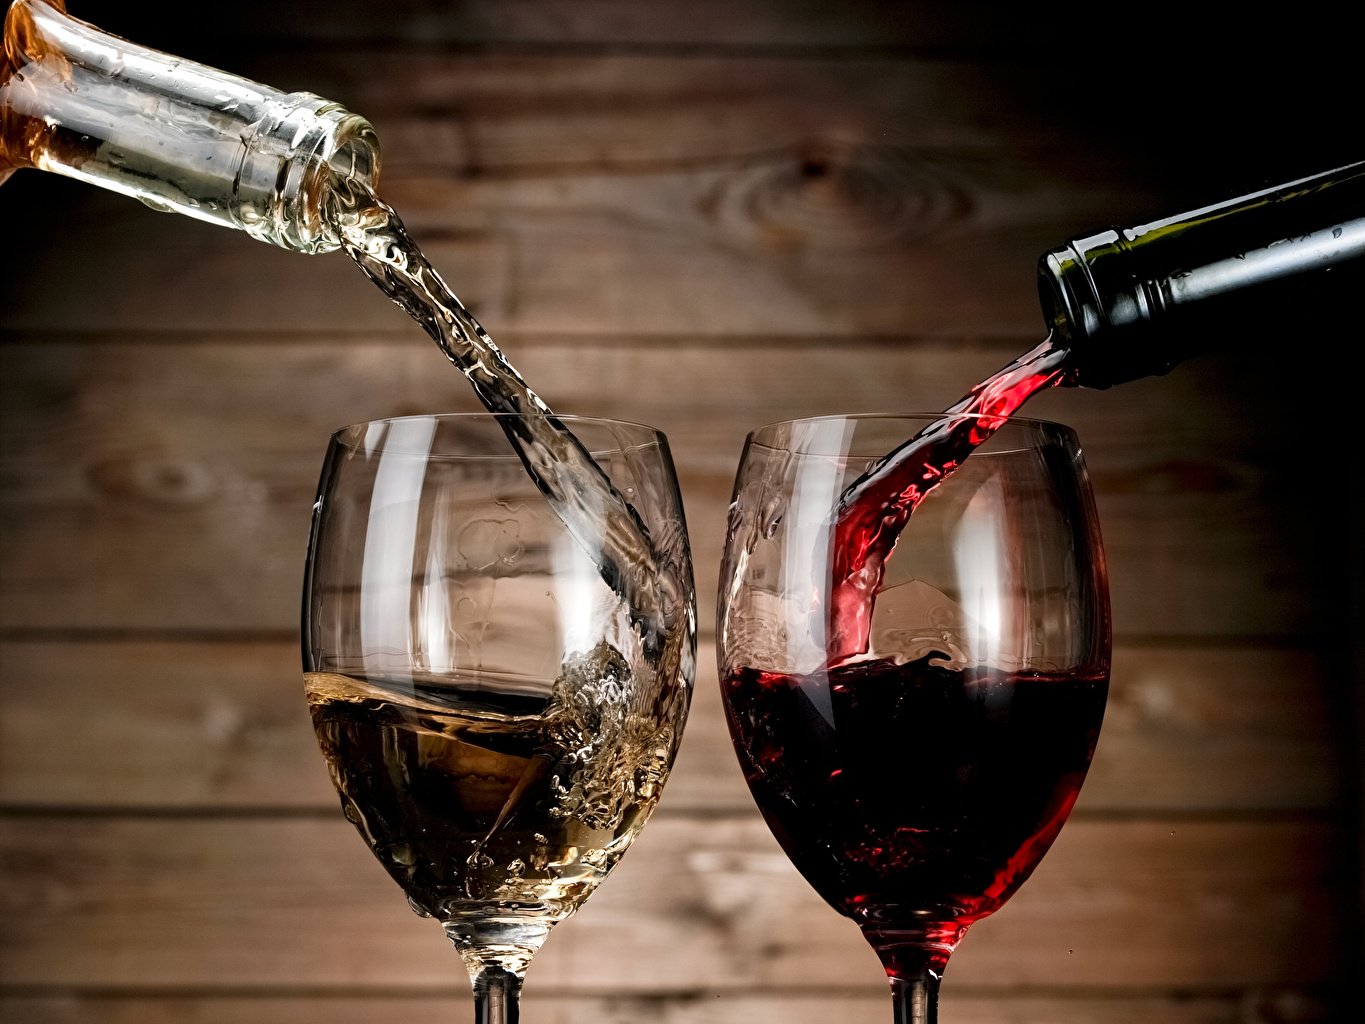 Фотография: в бокалы наливается из бутылок красное и белое вино